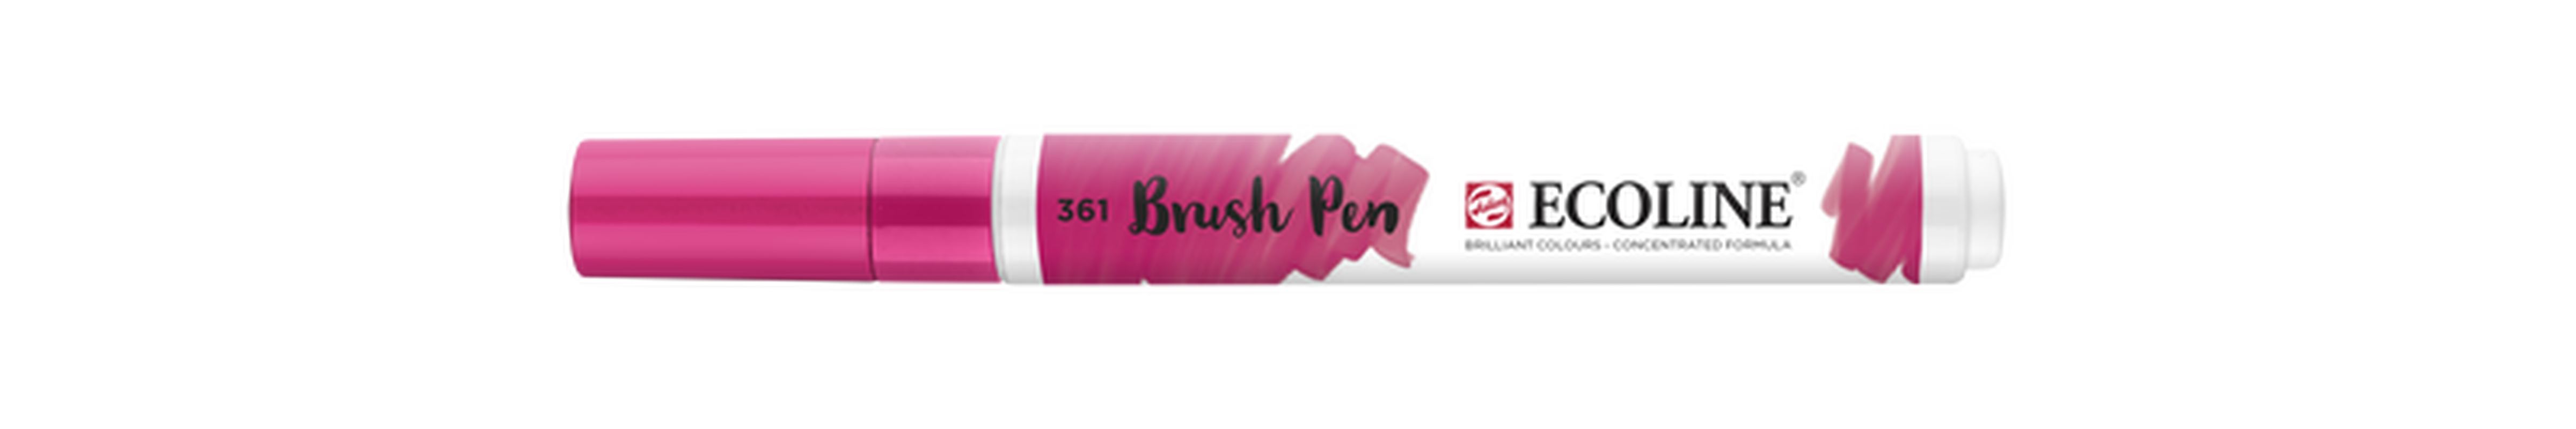 Talens Brush Pen Ecoline Number 361 Color Light Pink